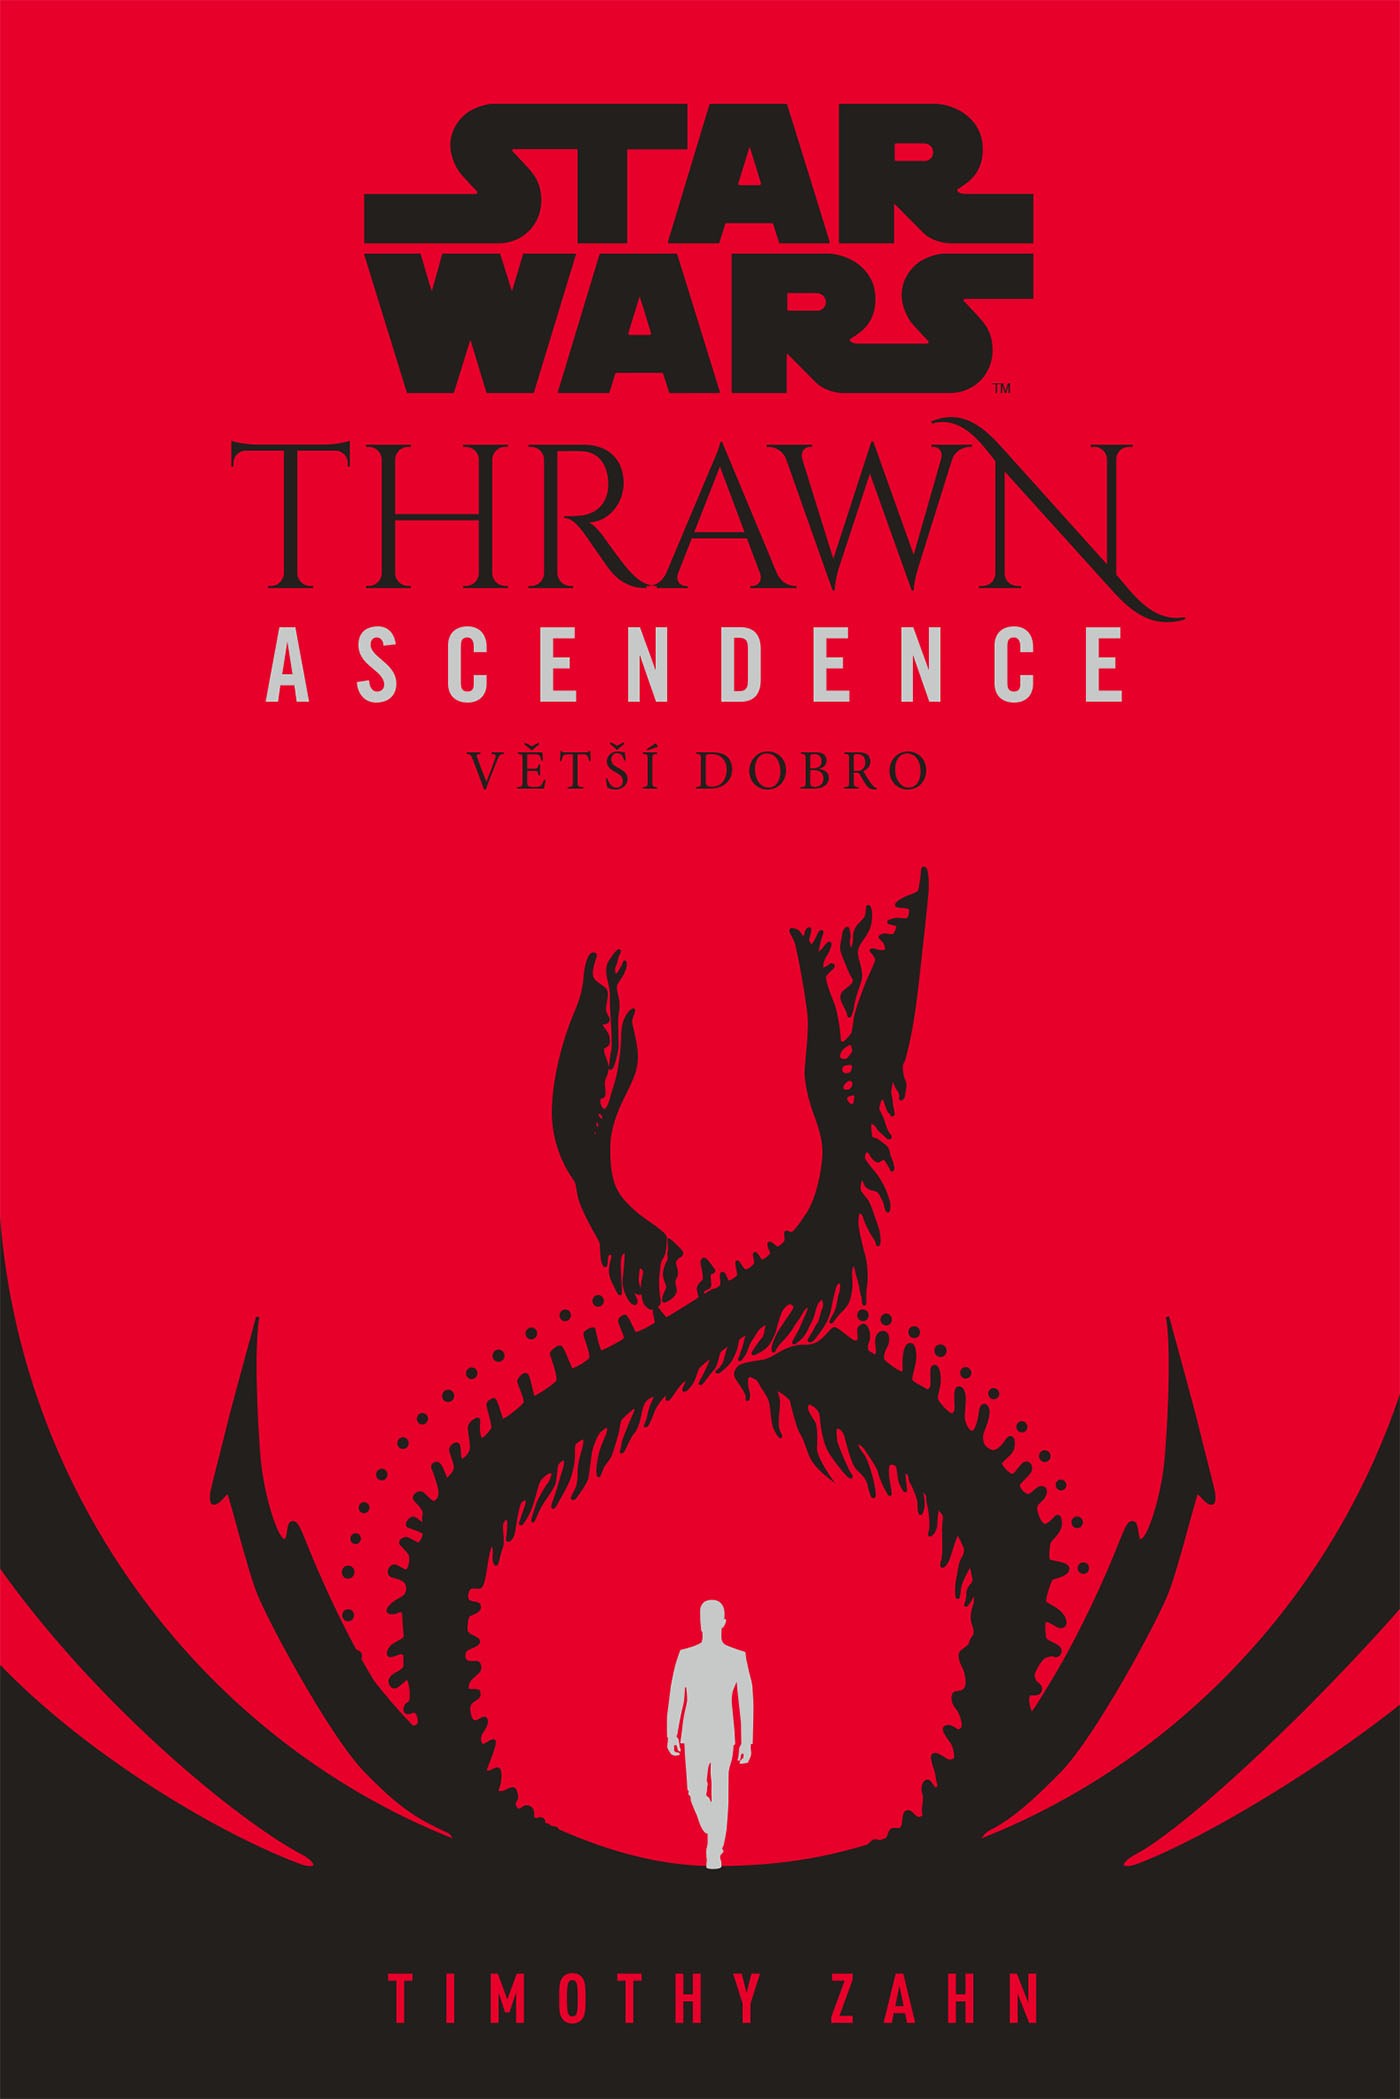 Star Wars: Thrawn Ascendence 2 - Větší dobro [Zahn Timothy]